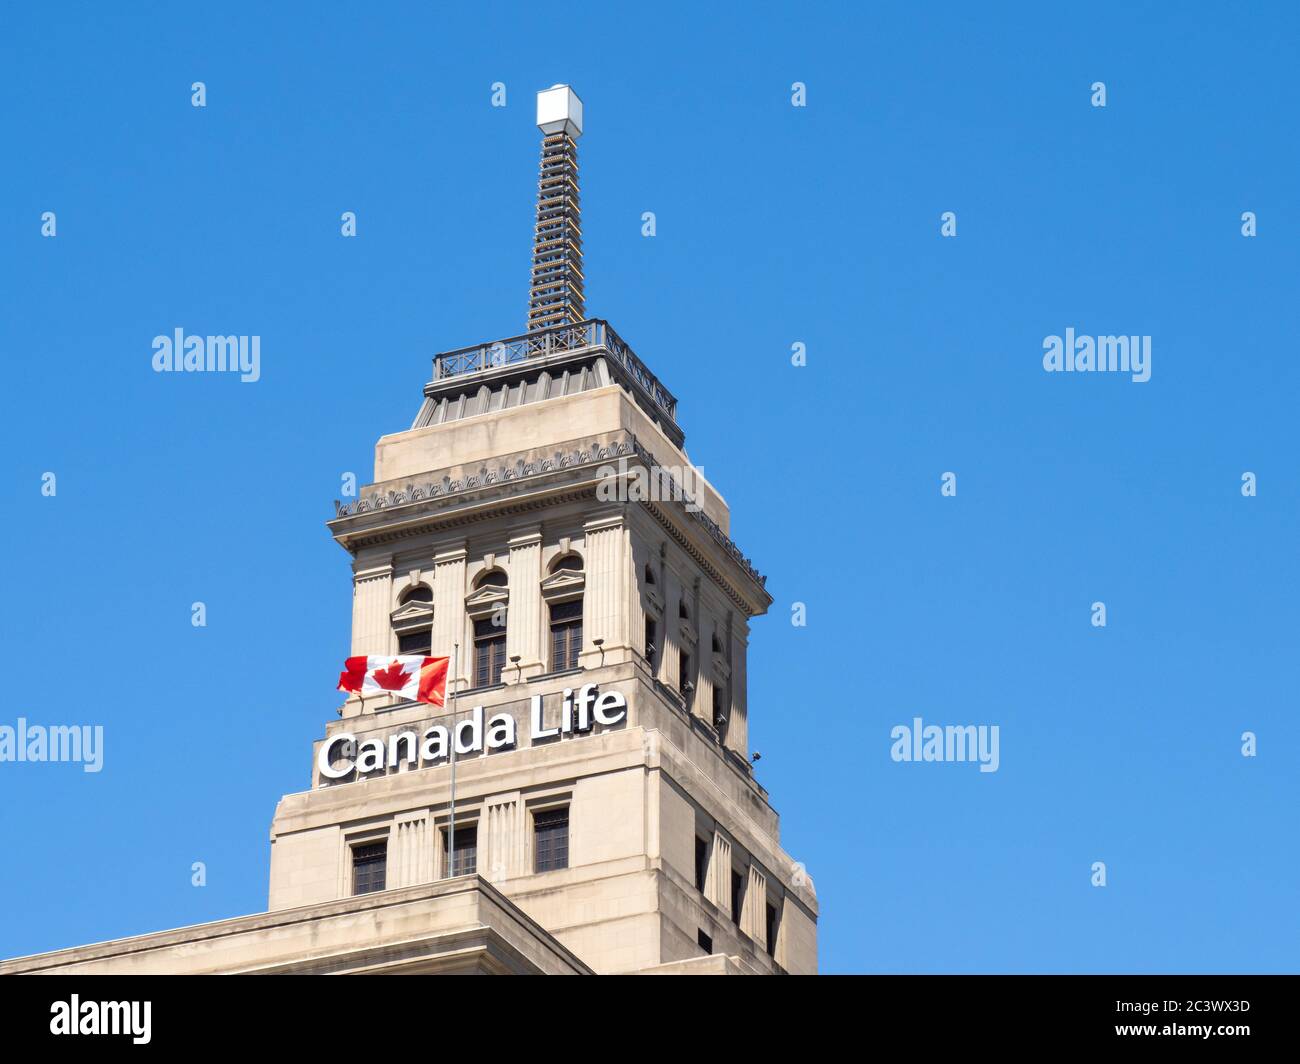 Toronto Canada 14 de junio de 2020; el histórico faro de Canada Life Building con una bandera canadiense que vuela sobre un cielo azul profundo Foto de stock